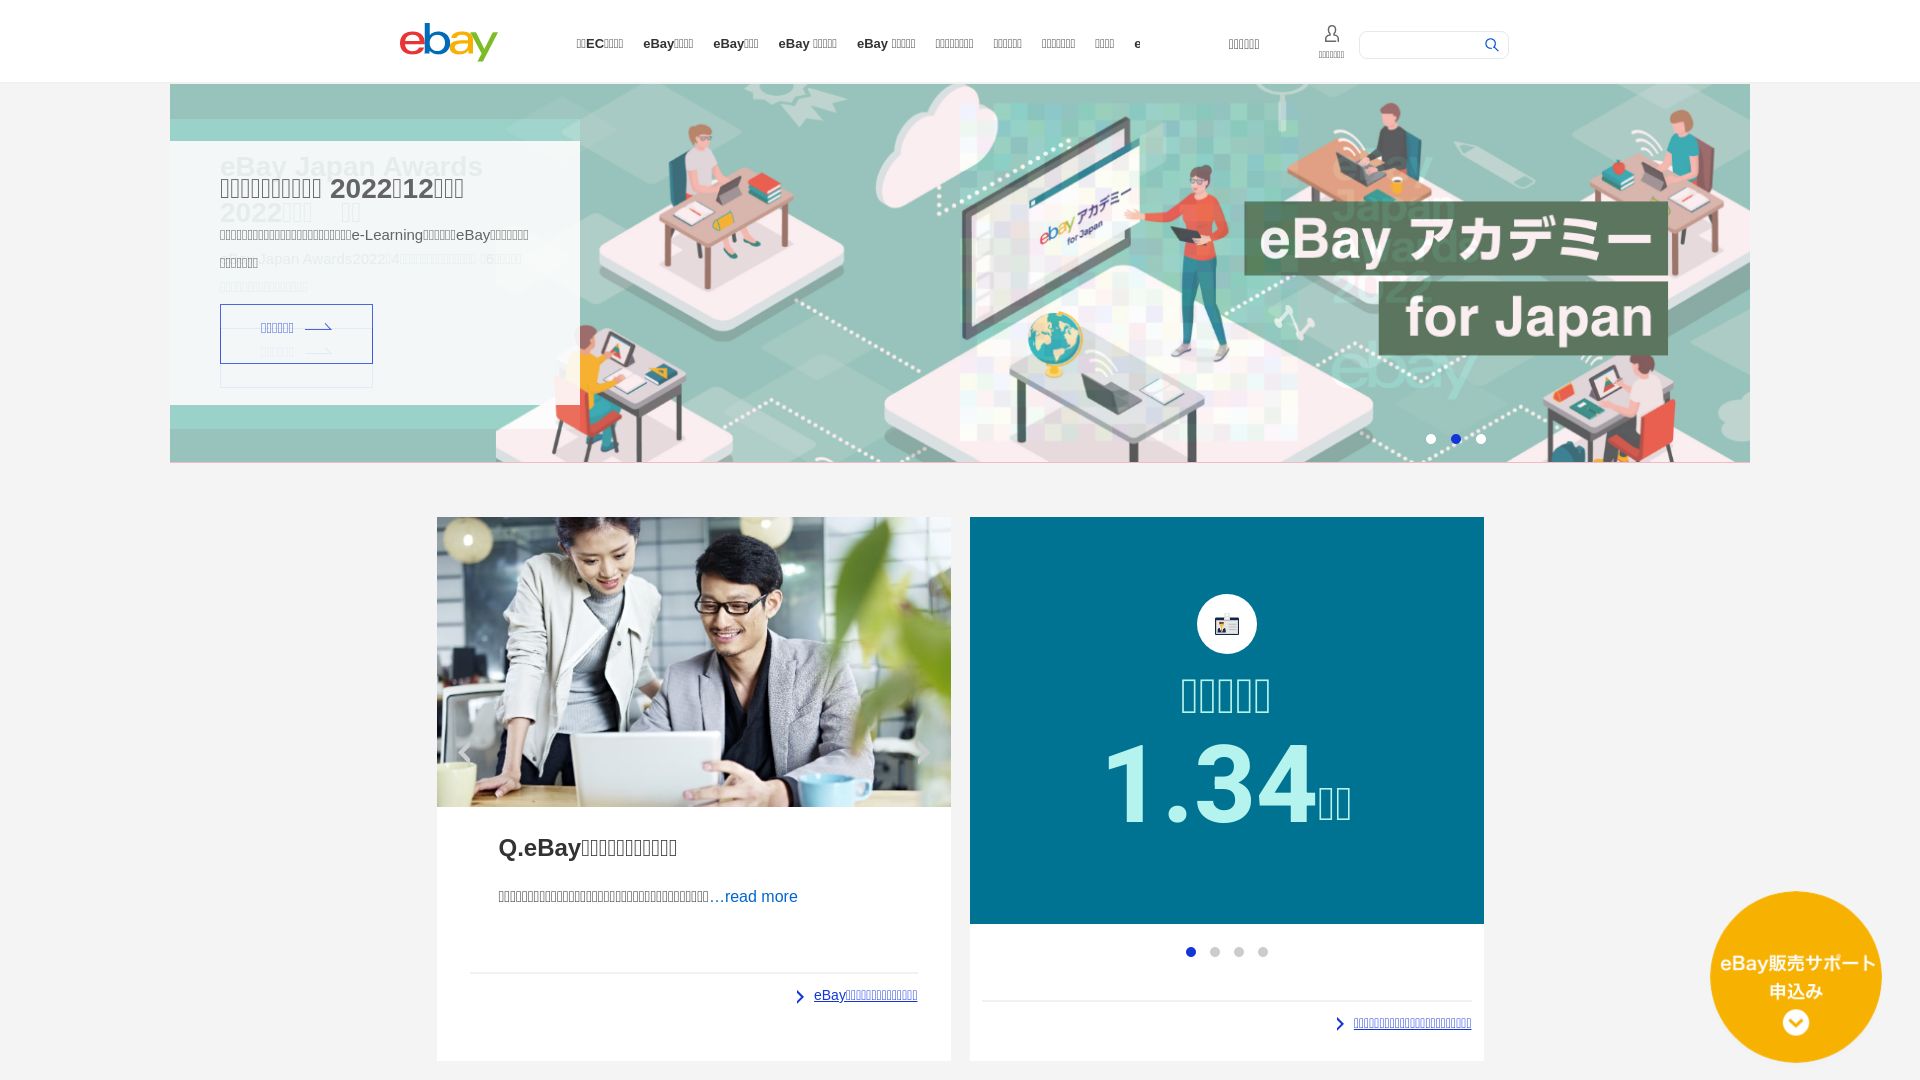 Estado web ebay.co.jp está   ONLINE